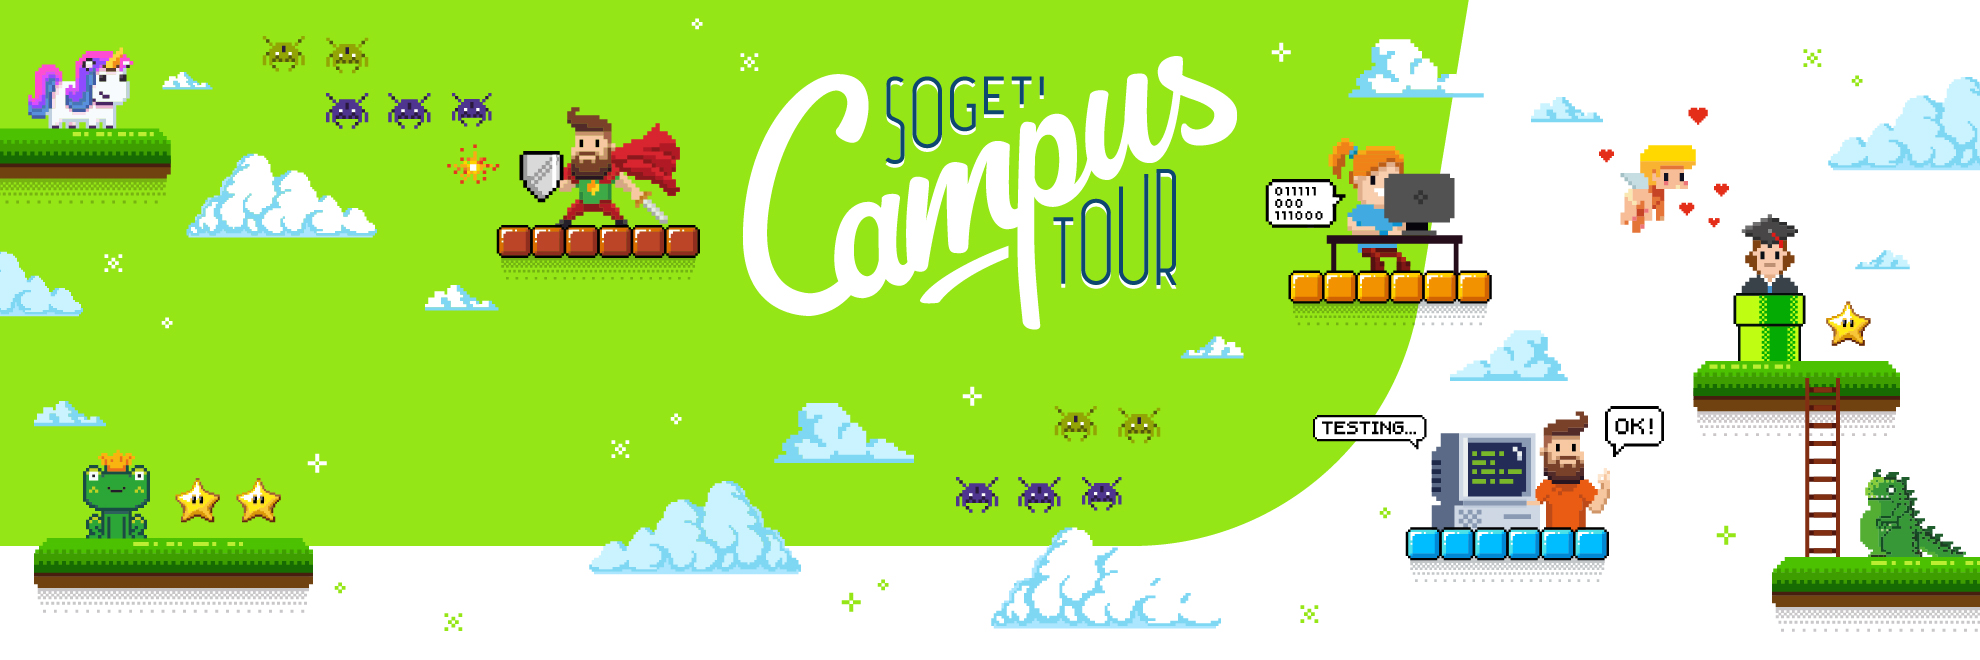 Sogeti Campus Tour